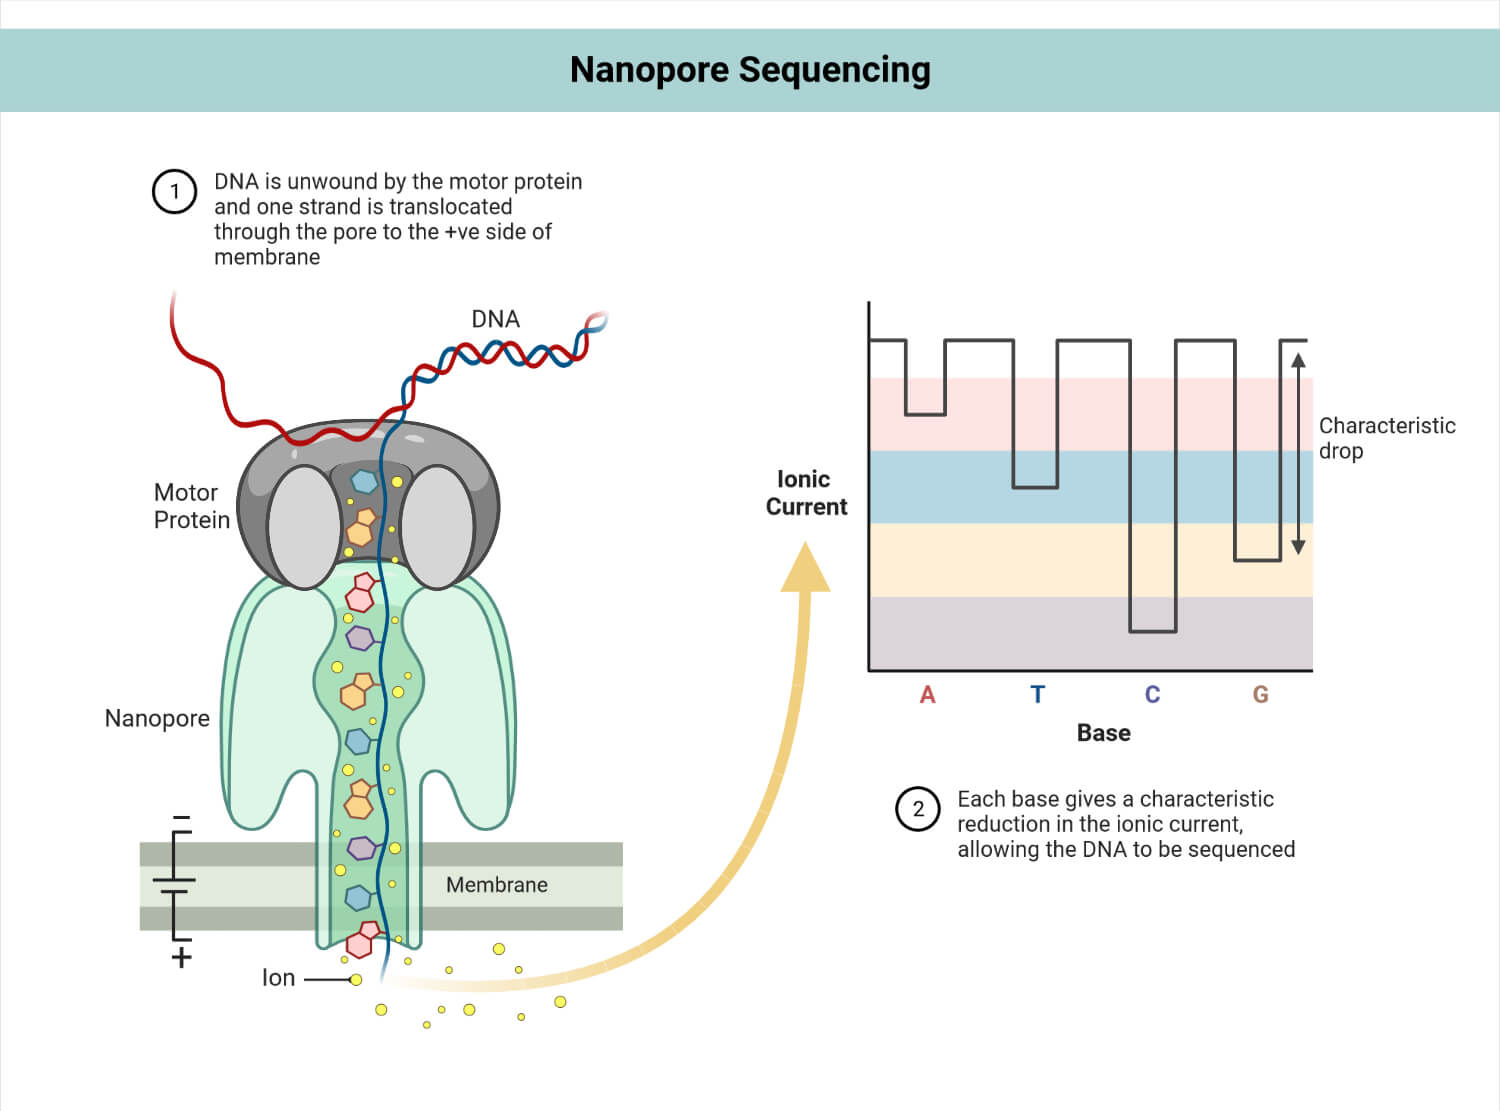 Nanopore sequencing